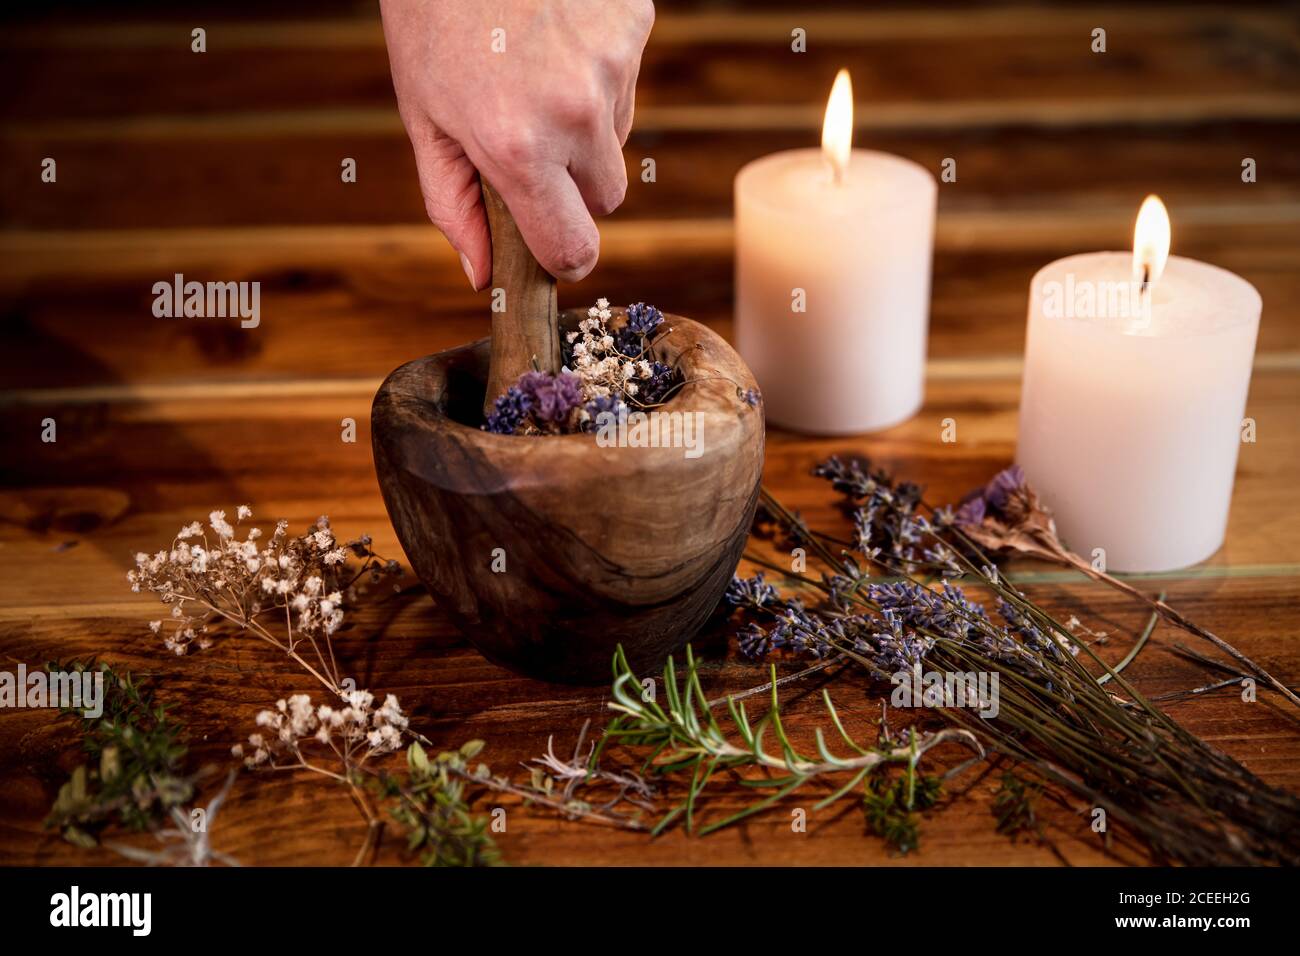 Pulverizar hierbas y flores curativas con el mortero, ingredientes esotéricos para una terapia, mano femenina Foto de stock